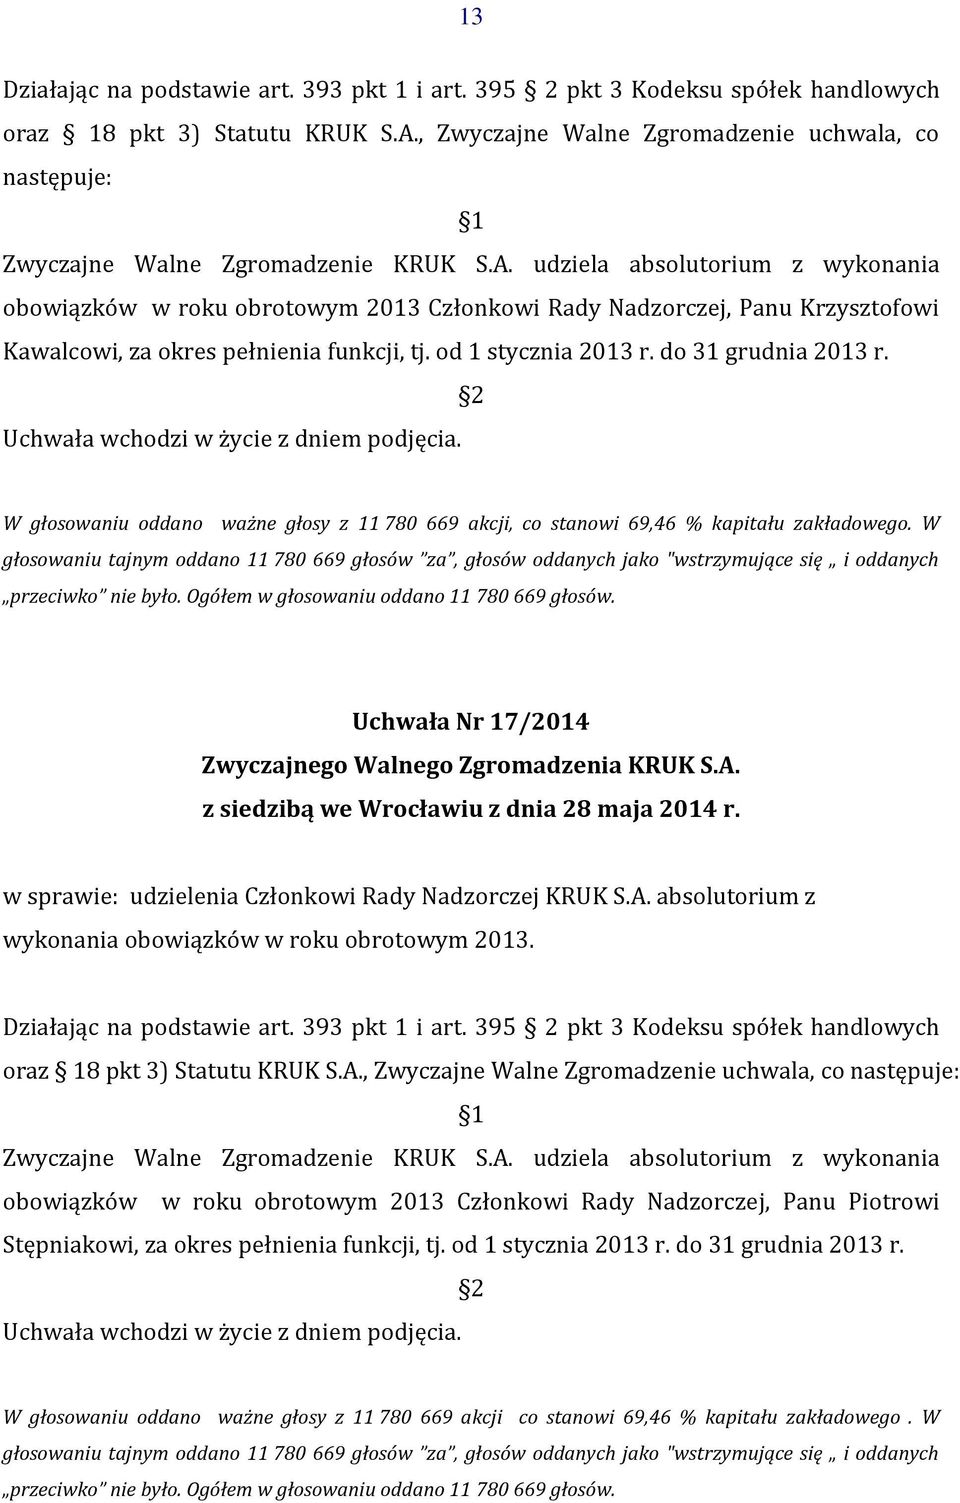 udziela absolutorium z wykonania obowiązków w roku obrotowym 2013 Członkowi Rady Nadzorczej, Panu Krzysztofowi Kawalcowi, za okres pełnienia funkcji, tj. od 1 stycznia 2013 r. do 31 grudnia 2013 r.